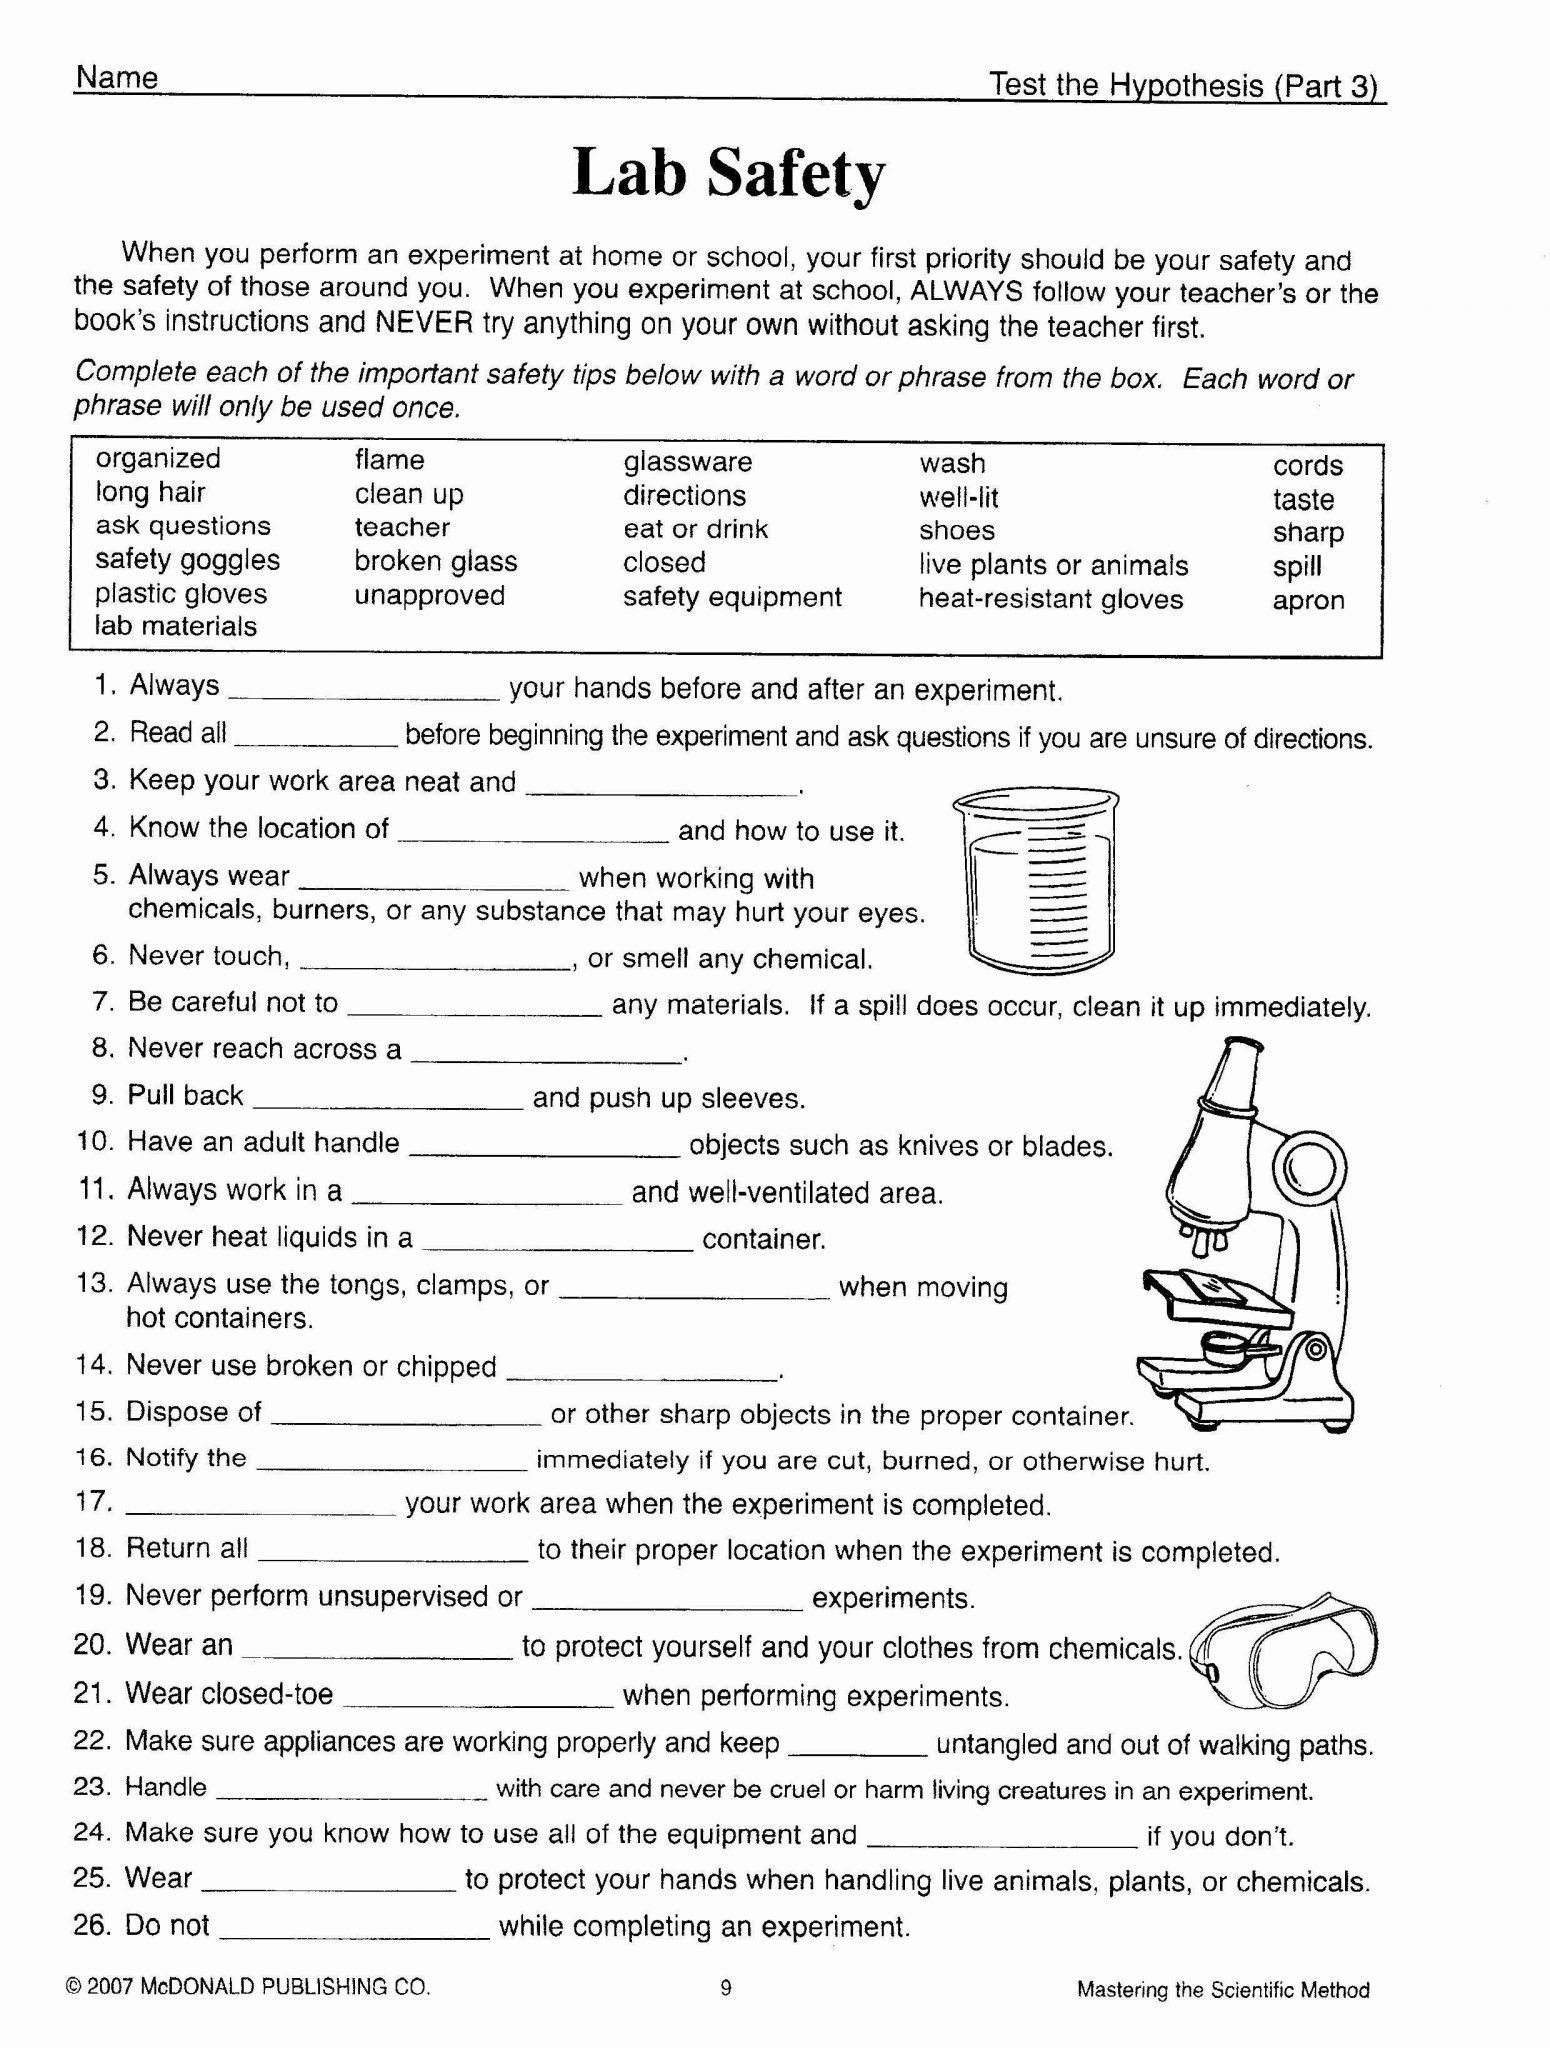 Scientific Method Worksheet High School Scientific Method Worksheets High School Scientific Method